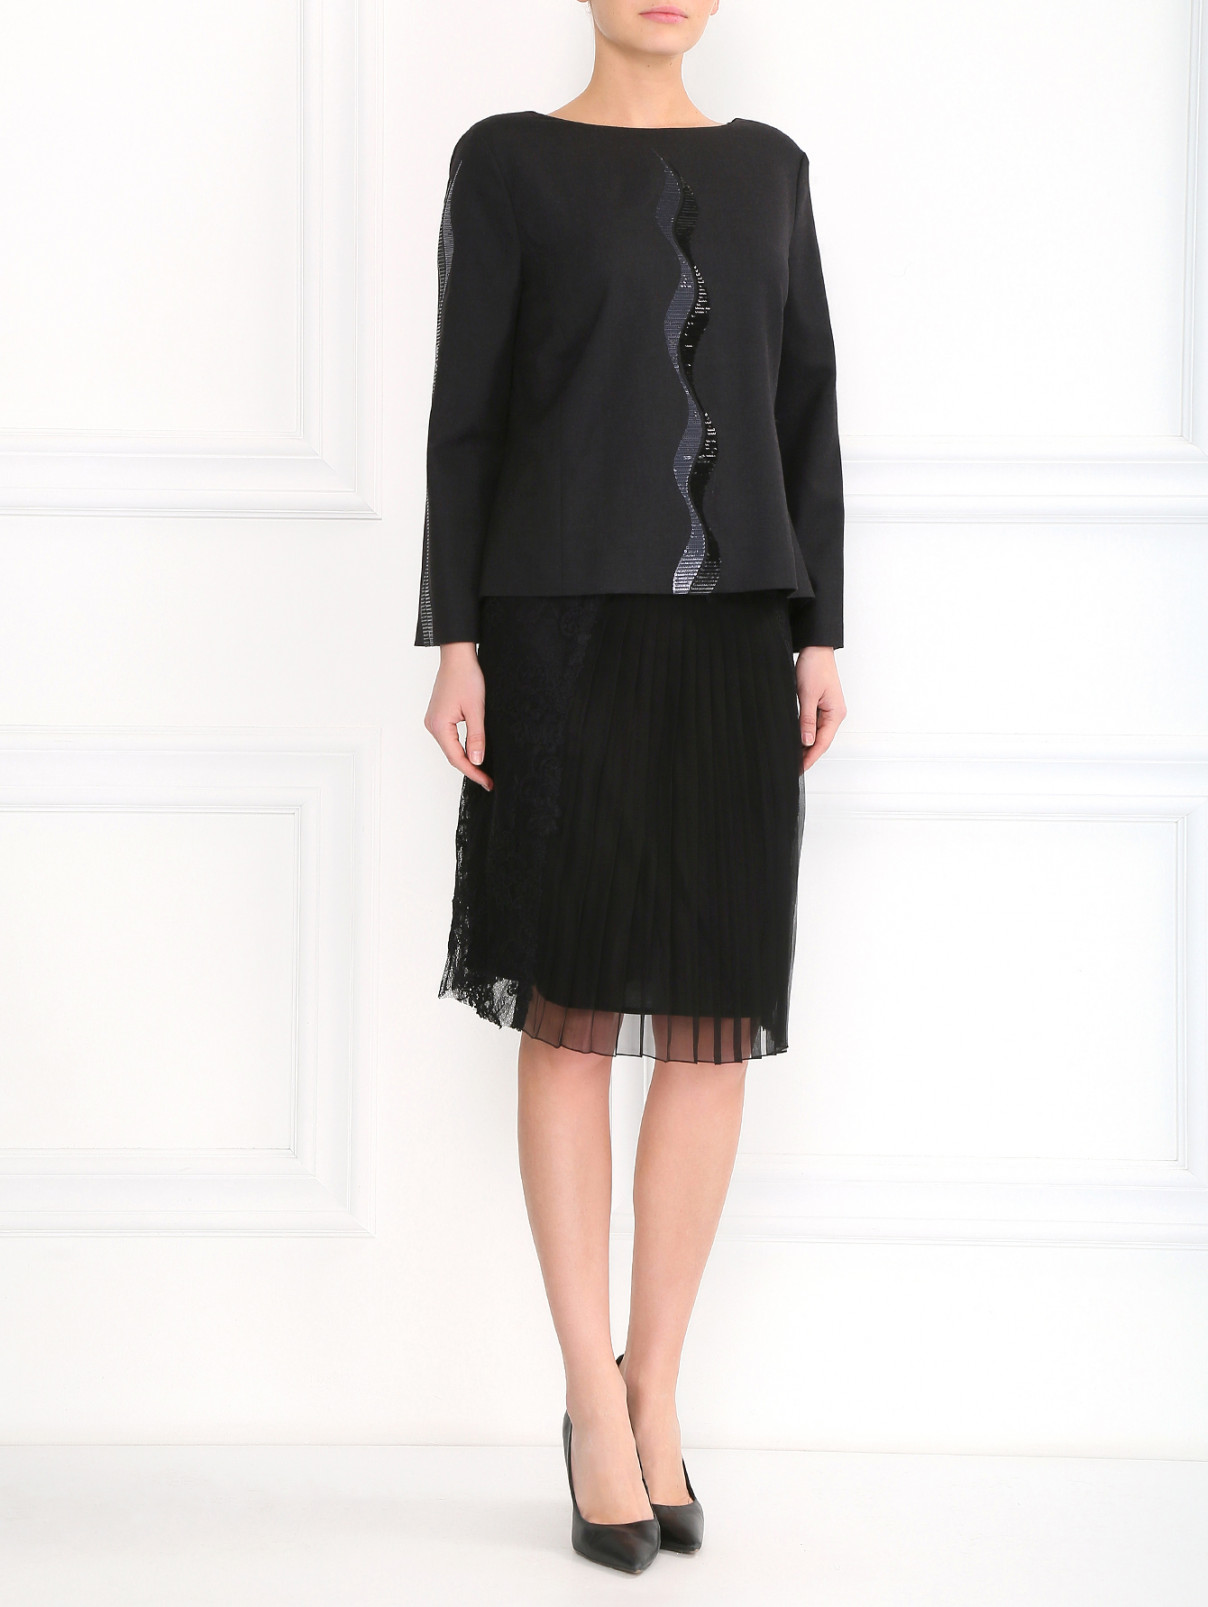 Блуза из шерсти с пайетками и завязками на спине Alberta Ferretti  –  Модель Общий вид  – Цвет:  Серый